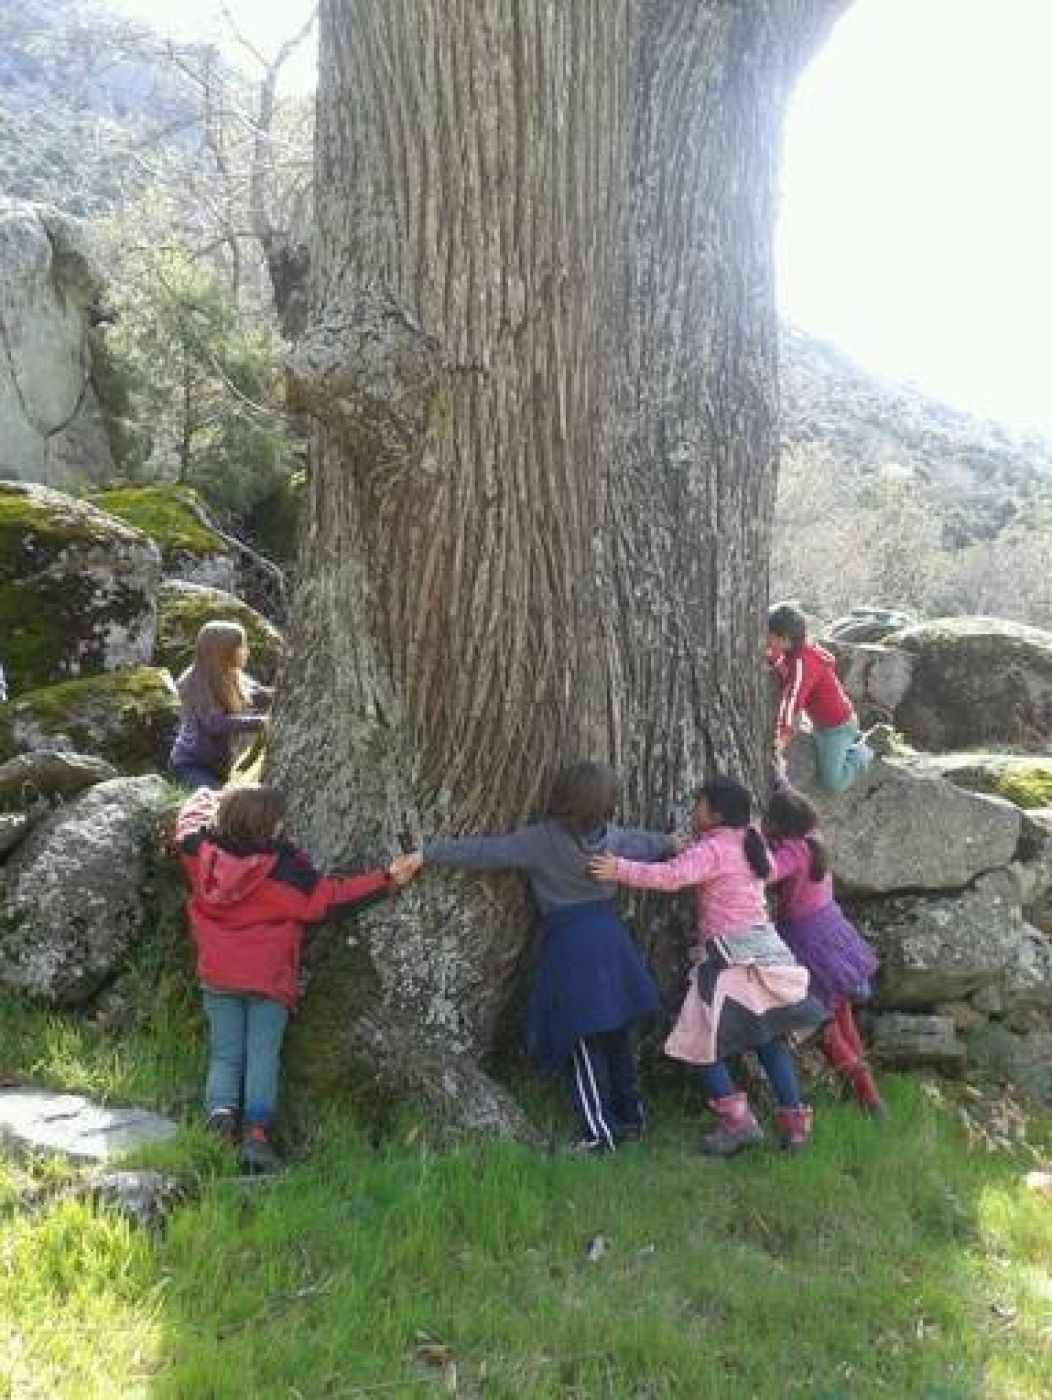 Niños abrazando un árbol en Zarzalejos (Madrid) el 4 de abril de 2014.  